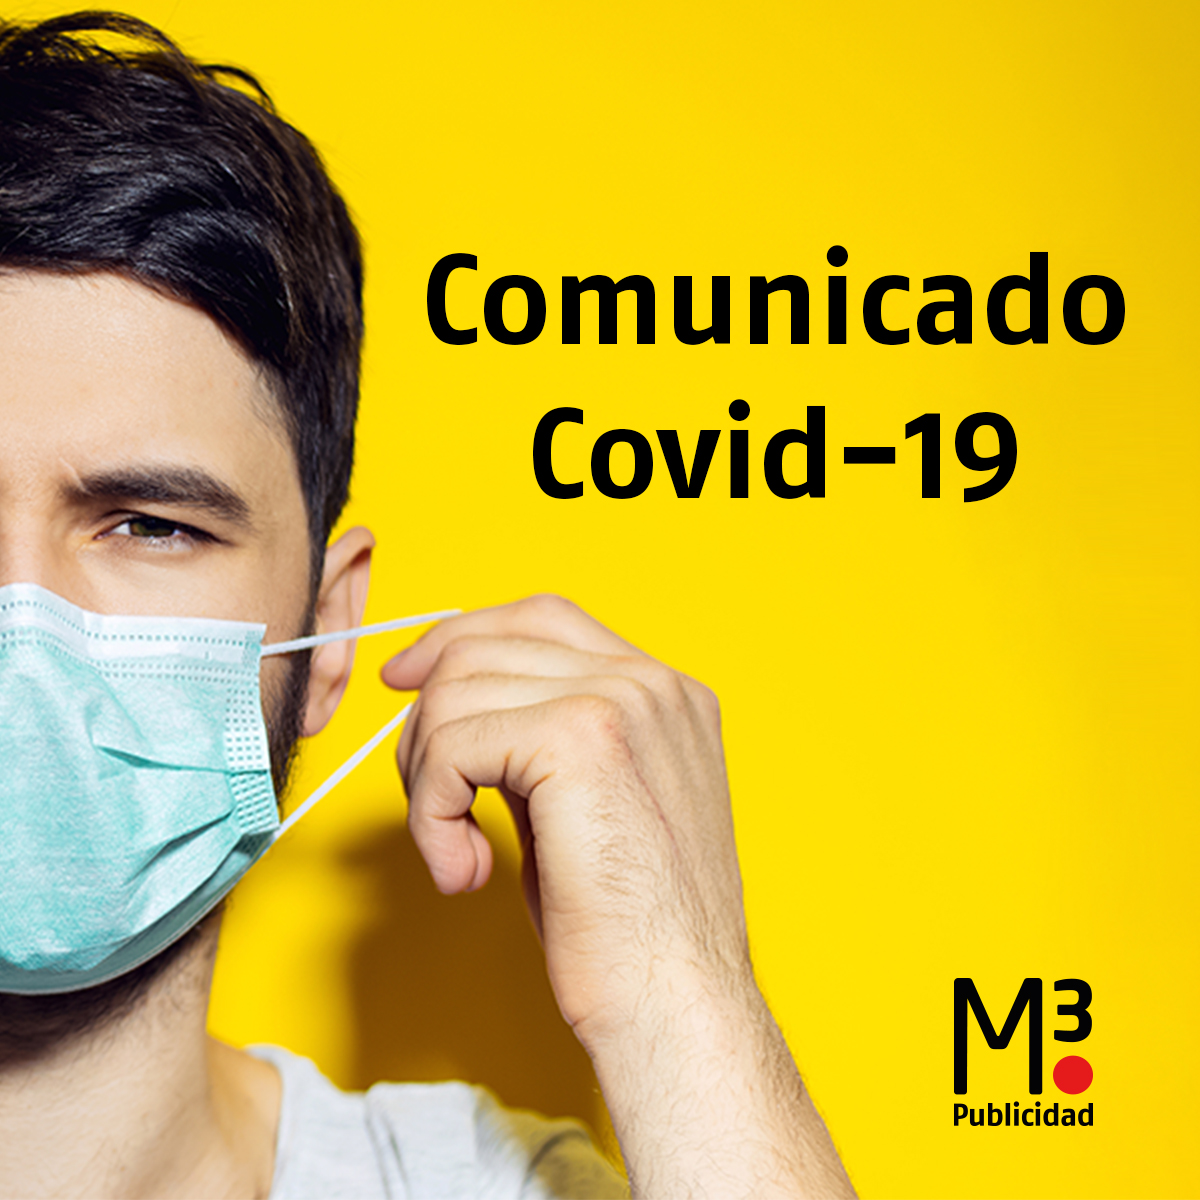 COVID-19: Comunicado para nuestros clientes y proveedores